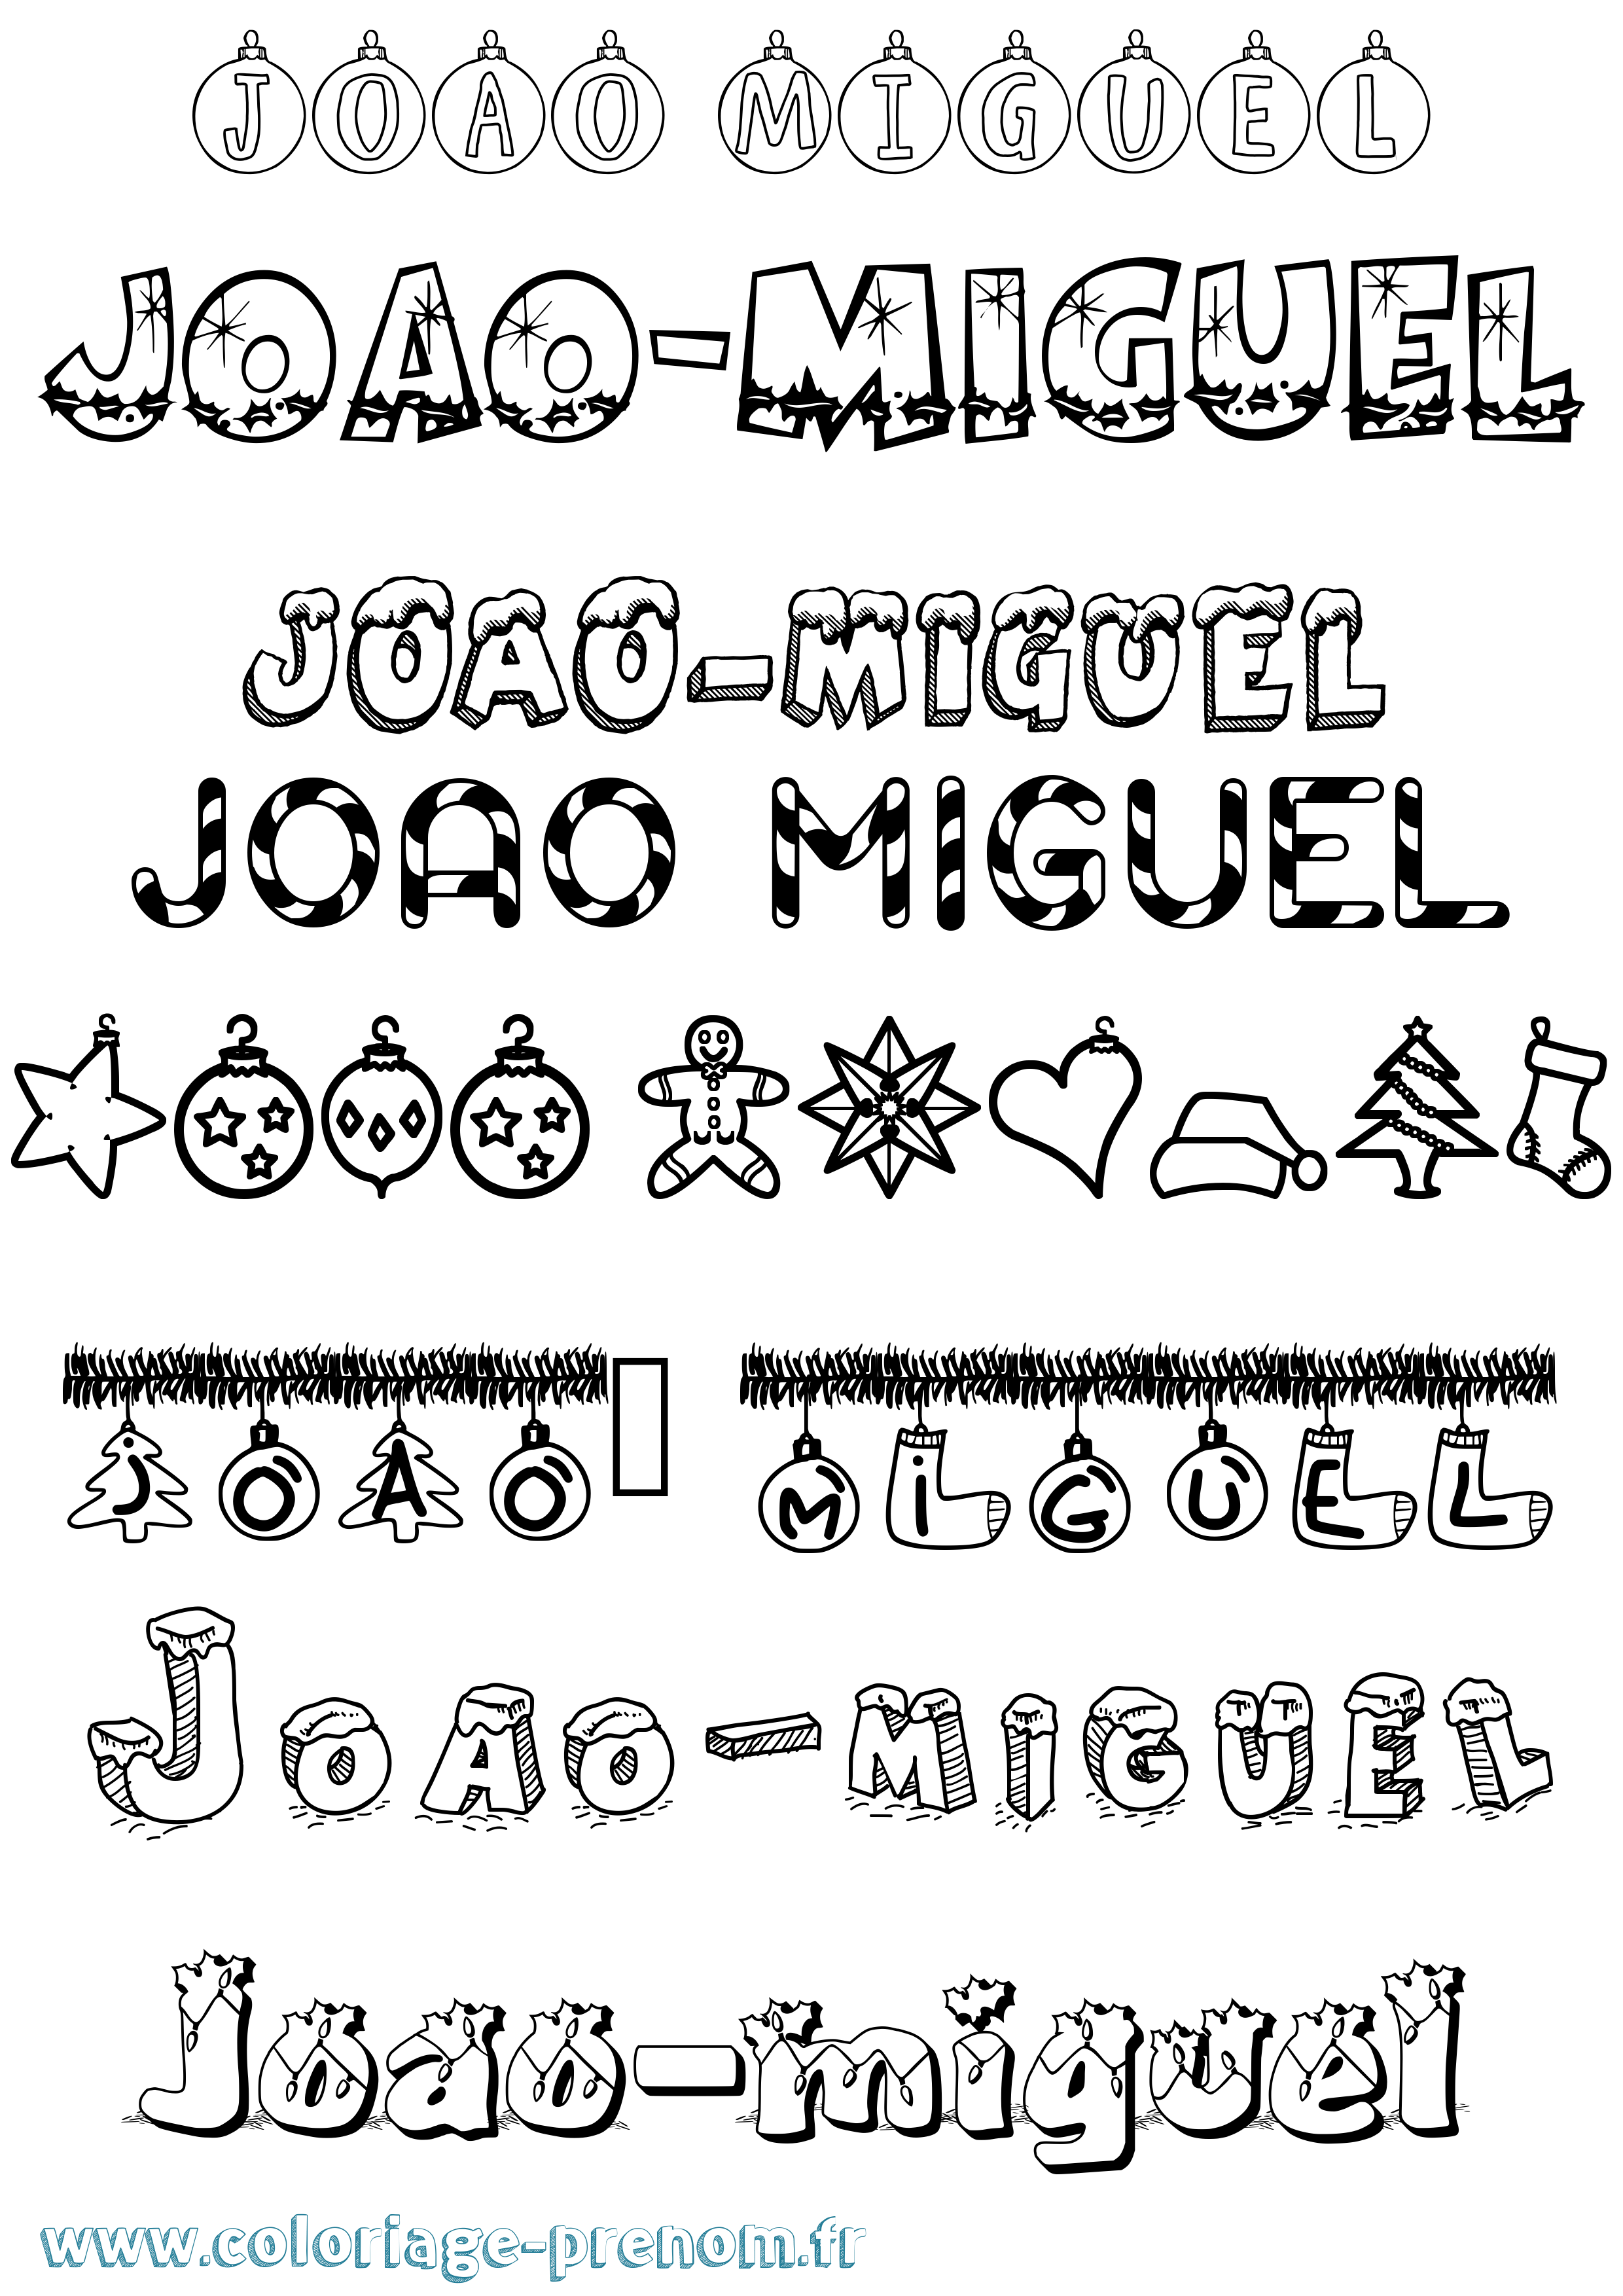 Coloriage prénom Joao-Miguel Noël